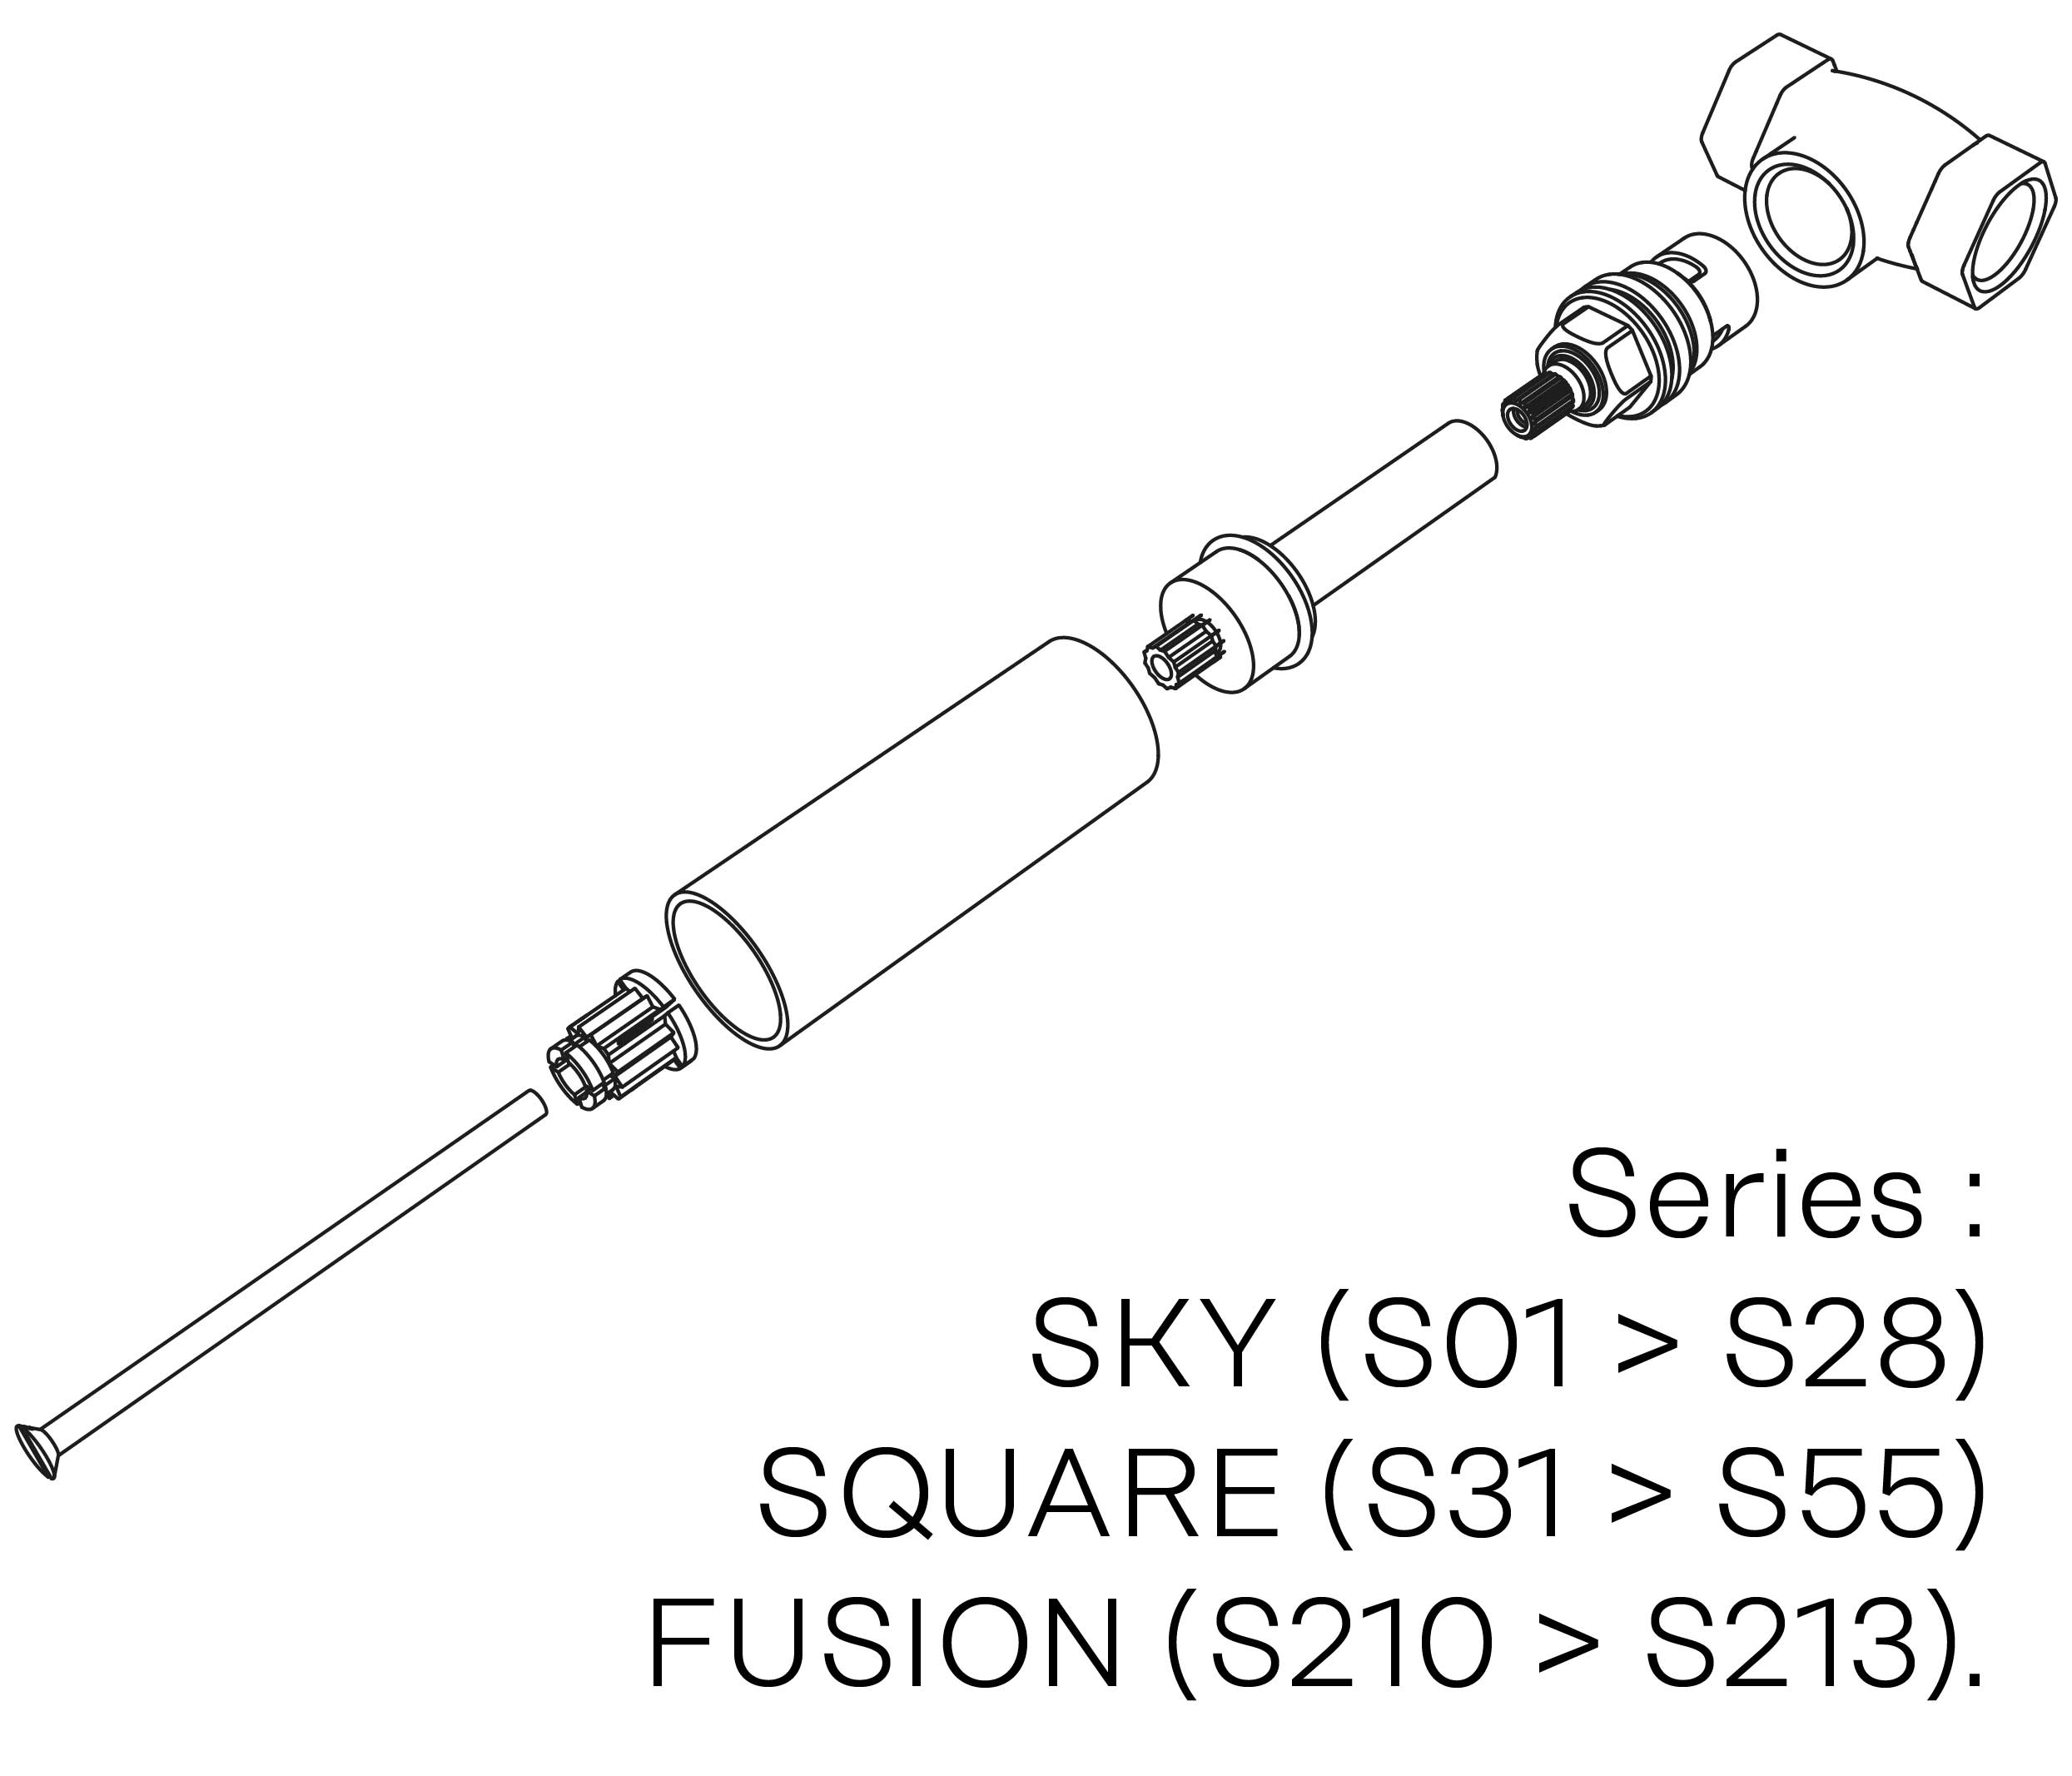 S00-25K29C Kit #5 for W-M valve 3/4″, 1/4 turn, Right